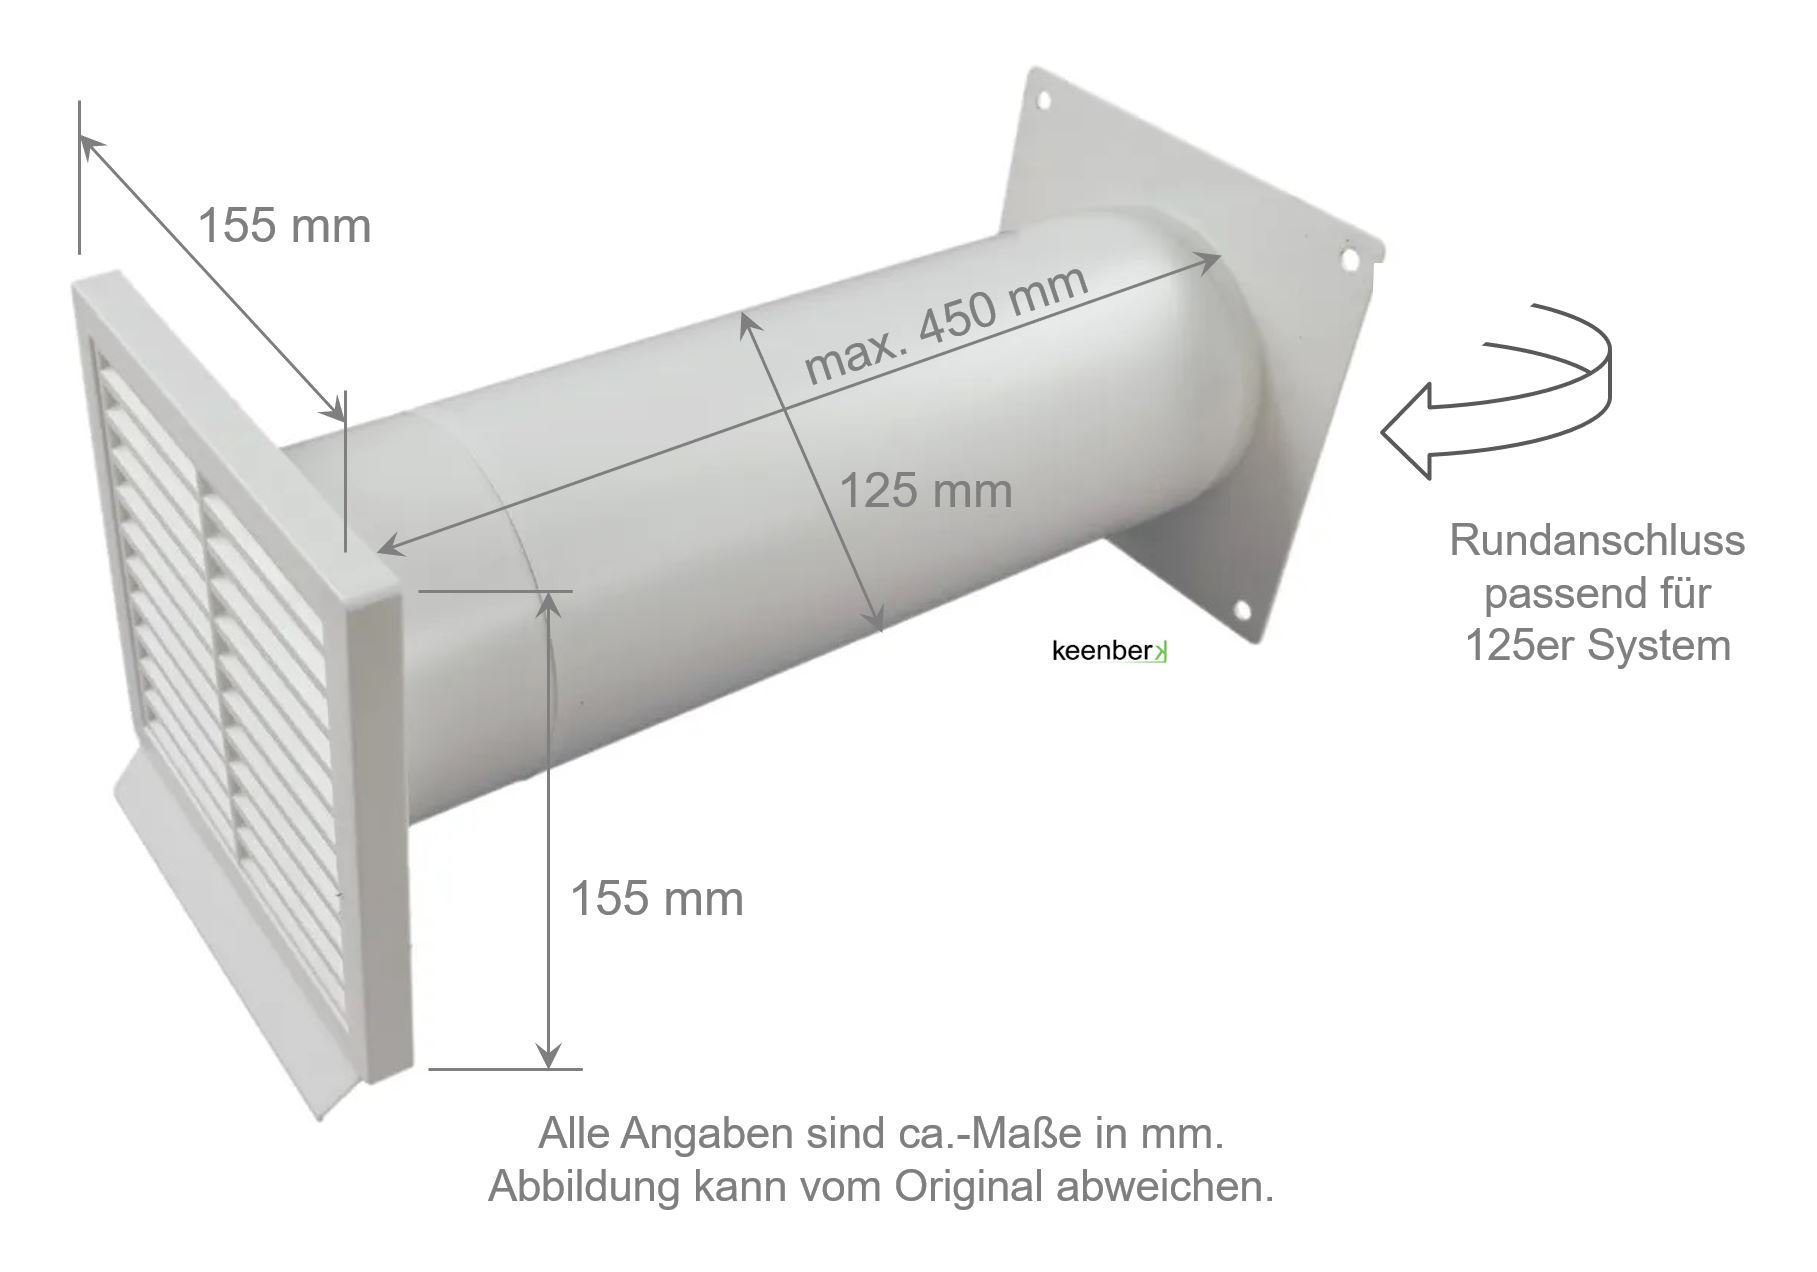 Flachanschluss Außengitter Mauerkasten 450mm ø125mm weiß Mauerstärken IKM